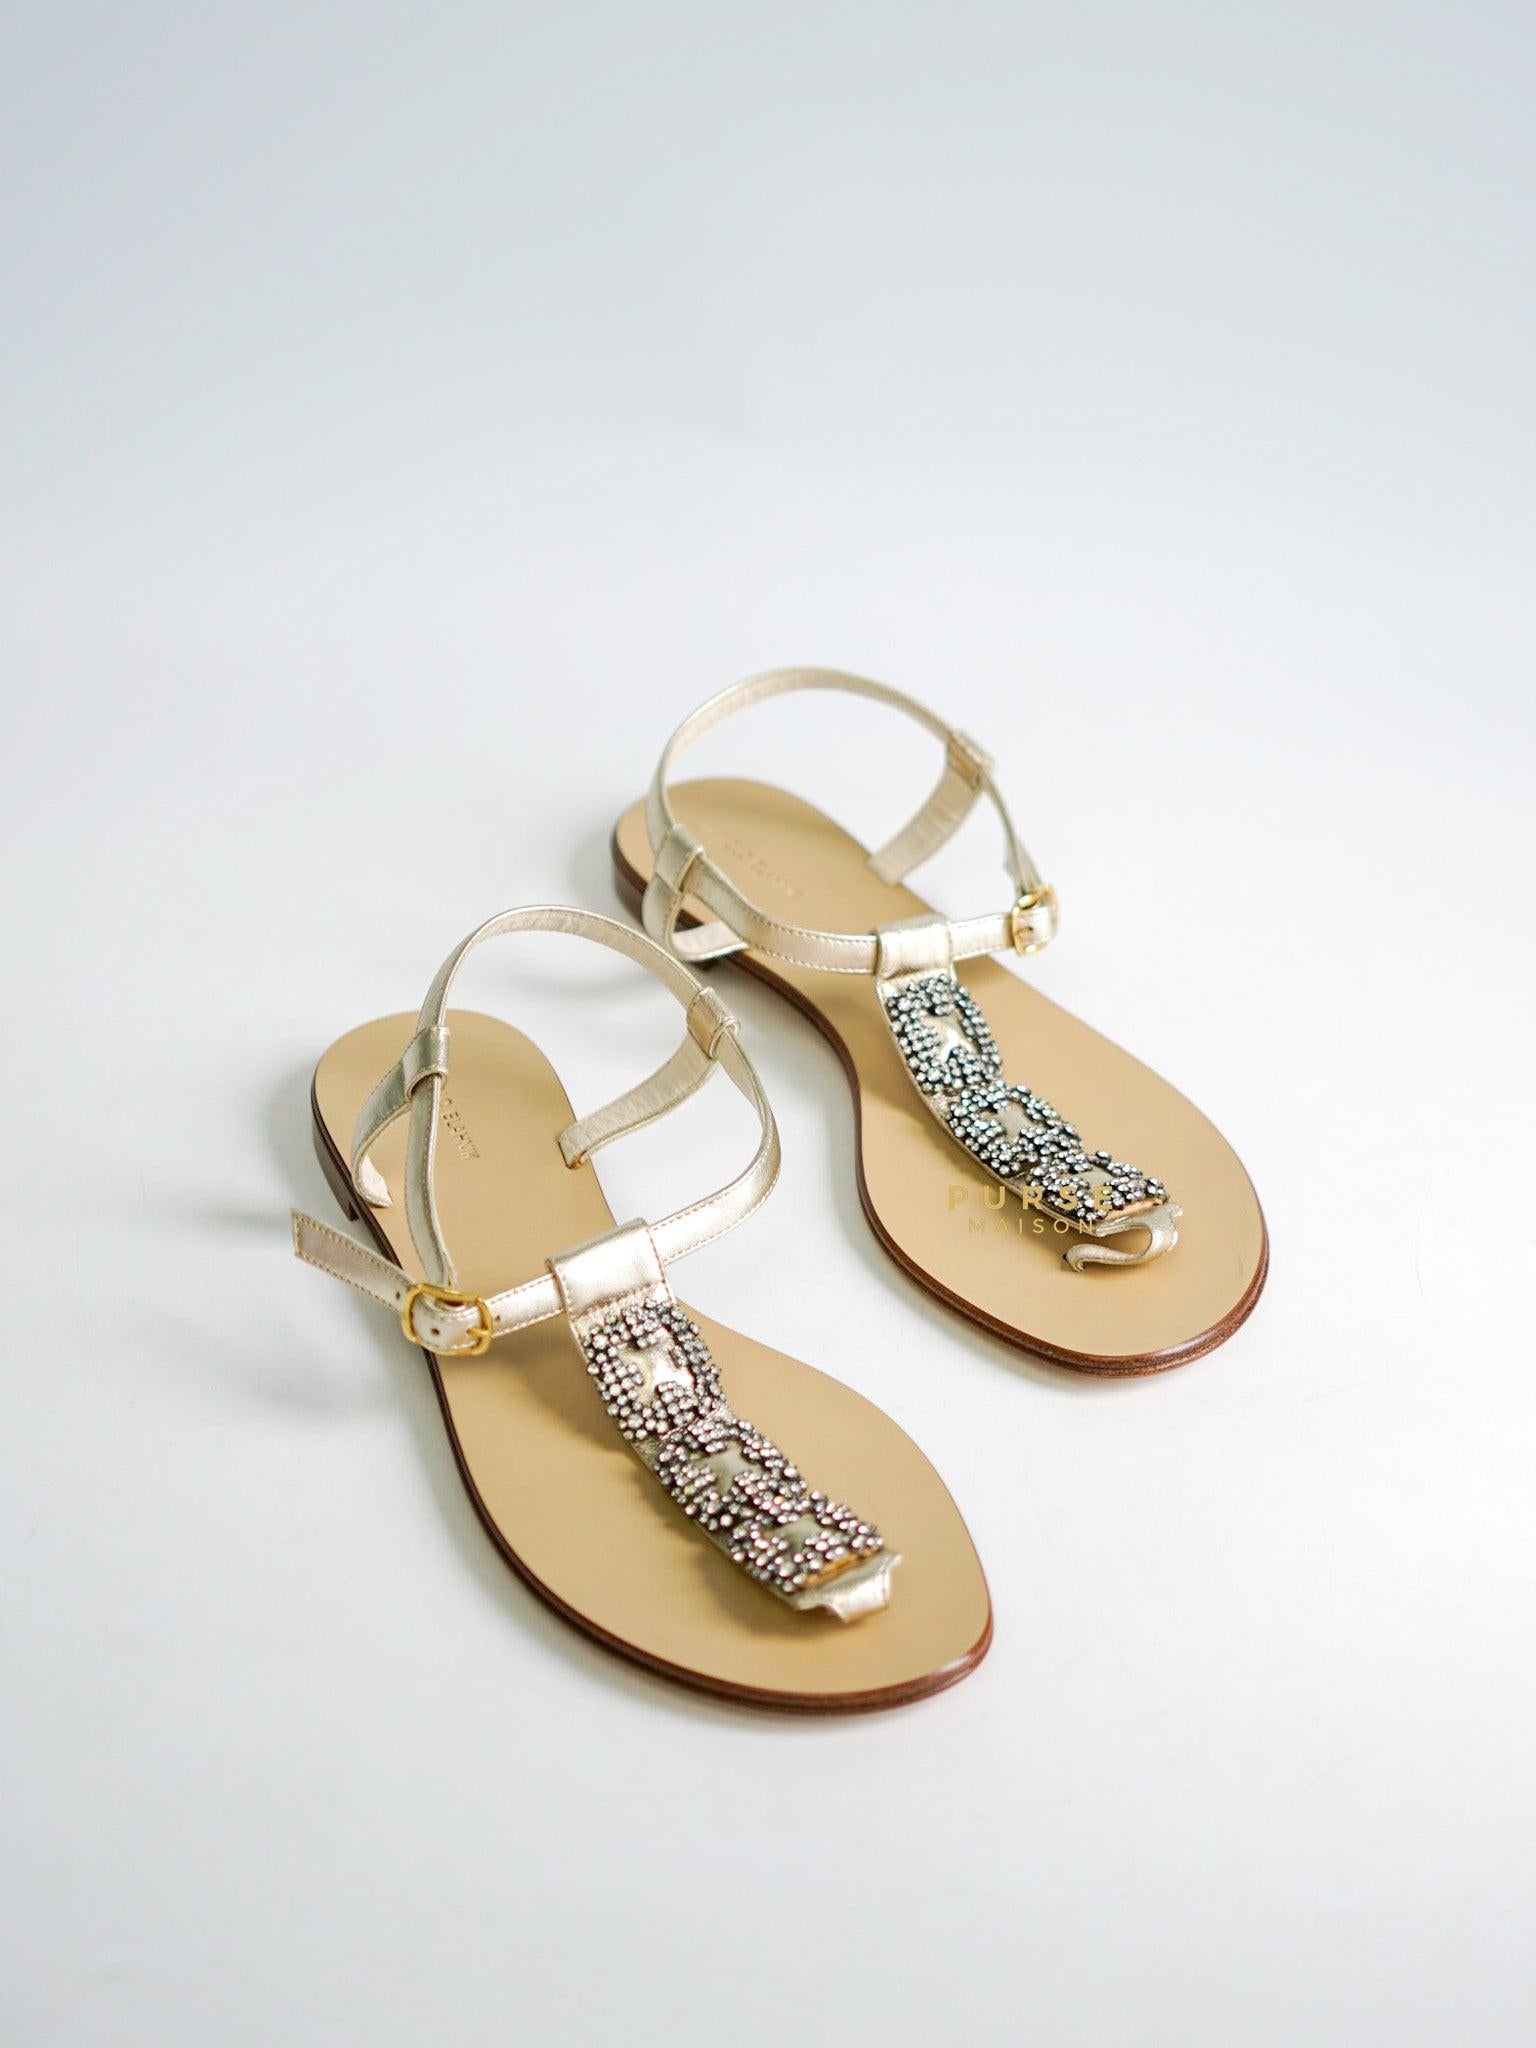 Manolo Blahnik T-Strap Flat Sandals Size 38.5 (24.5cm) | Purse Maison Luxury Bags Shop